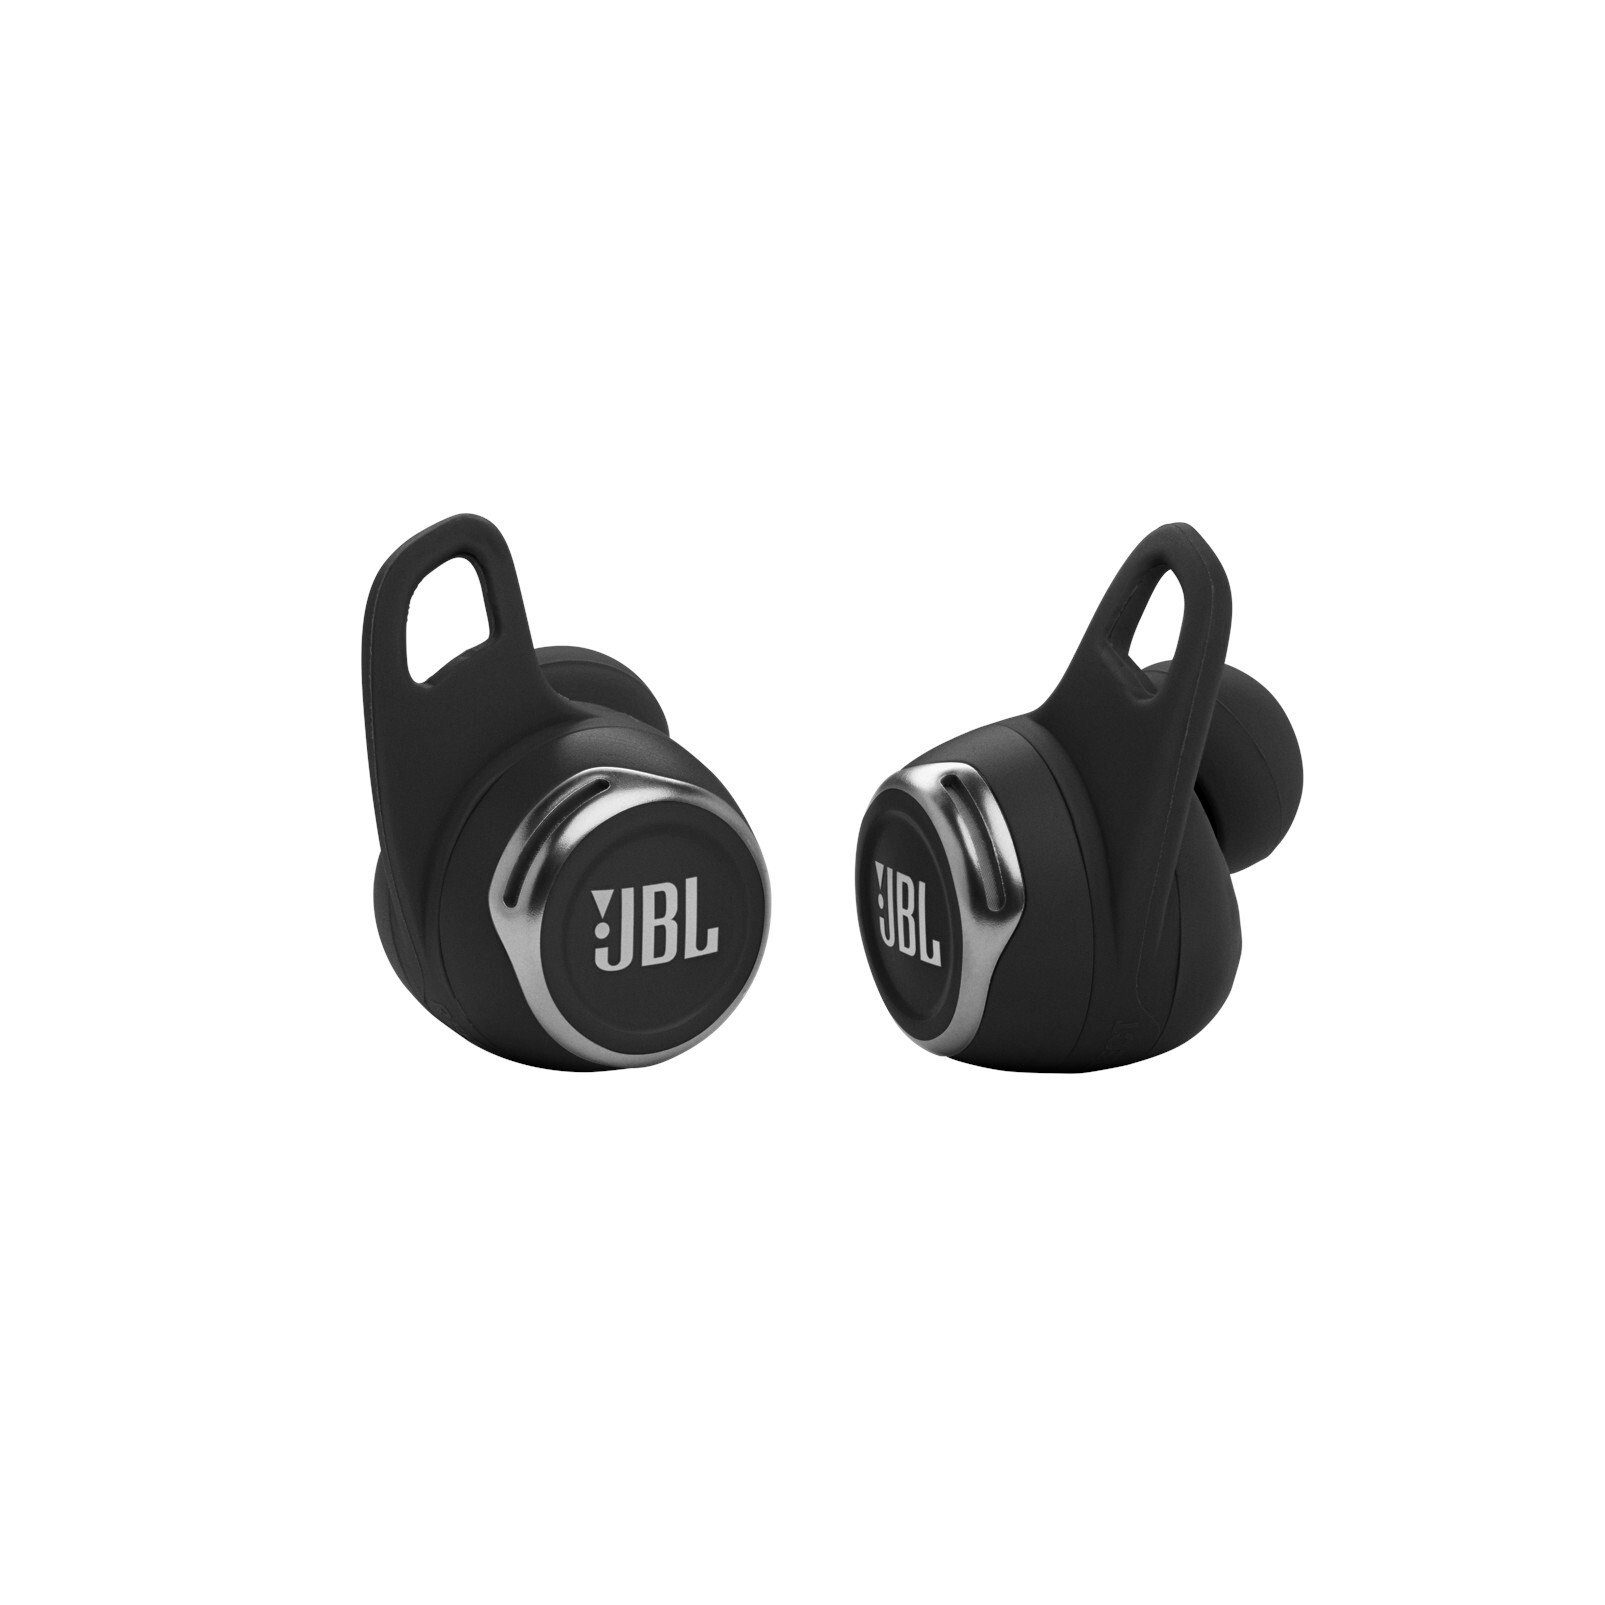 Getestete JBL Kopfhörer kaufen » JBL Kopfhörer Test | OTTO